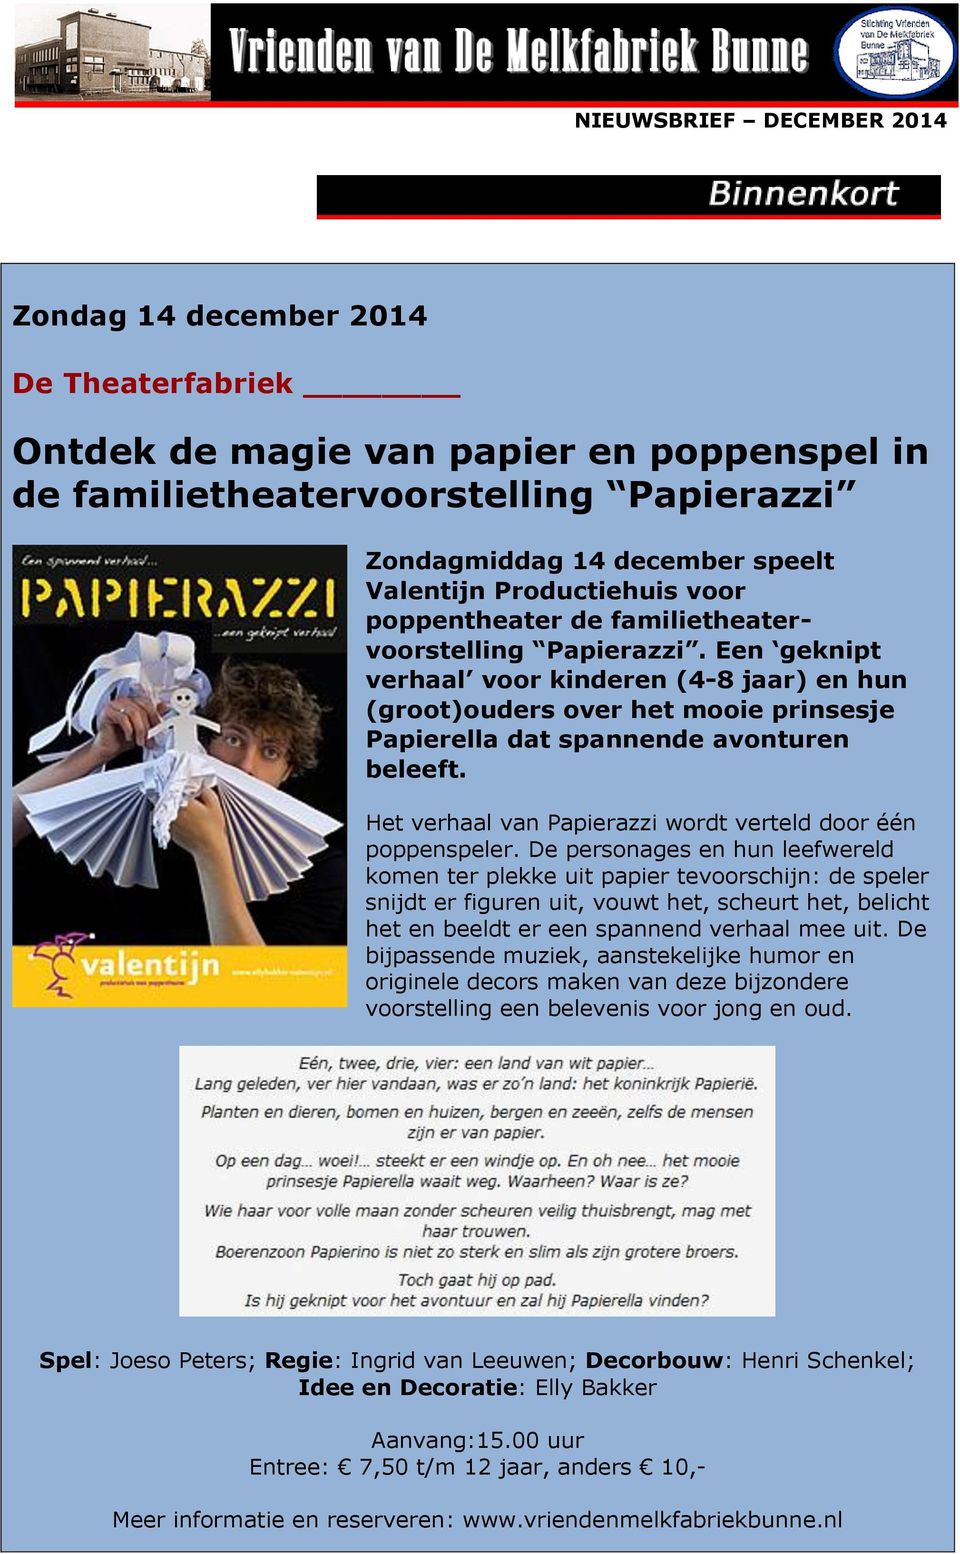 Een geknipt verhaal voor kinderen (4-8 jaar) en hun (groot)ouders over het mooie prinsesje Papierella dat spannende avonturen beleeft. Het verhaal van Papierazzi wordt verteld door één poppenspeler.